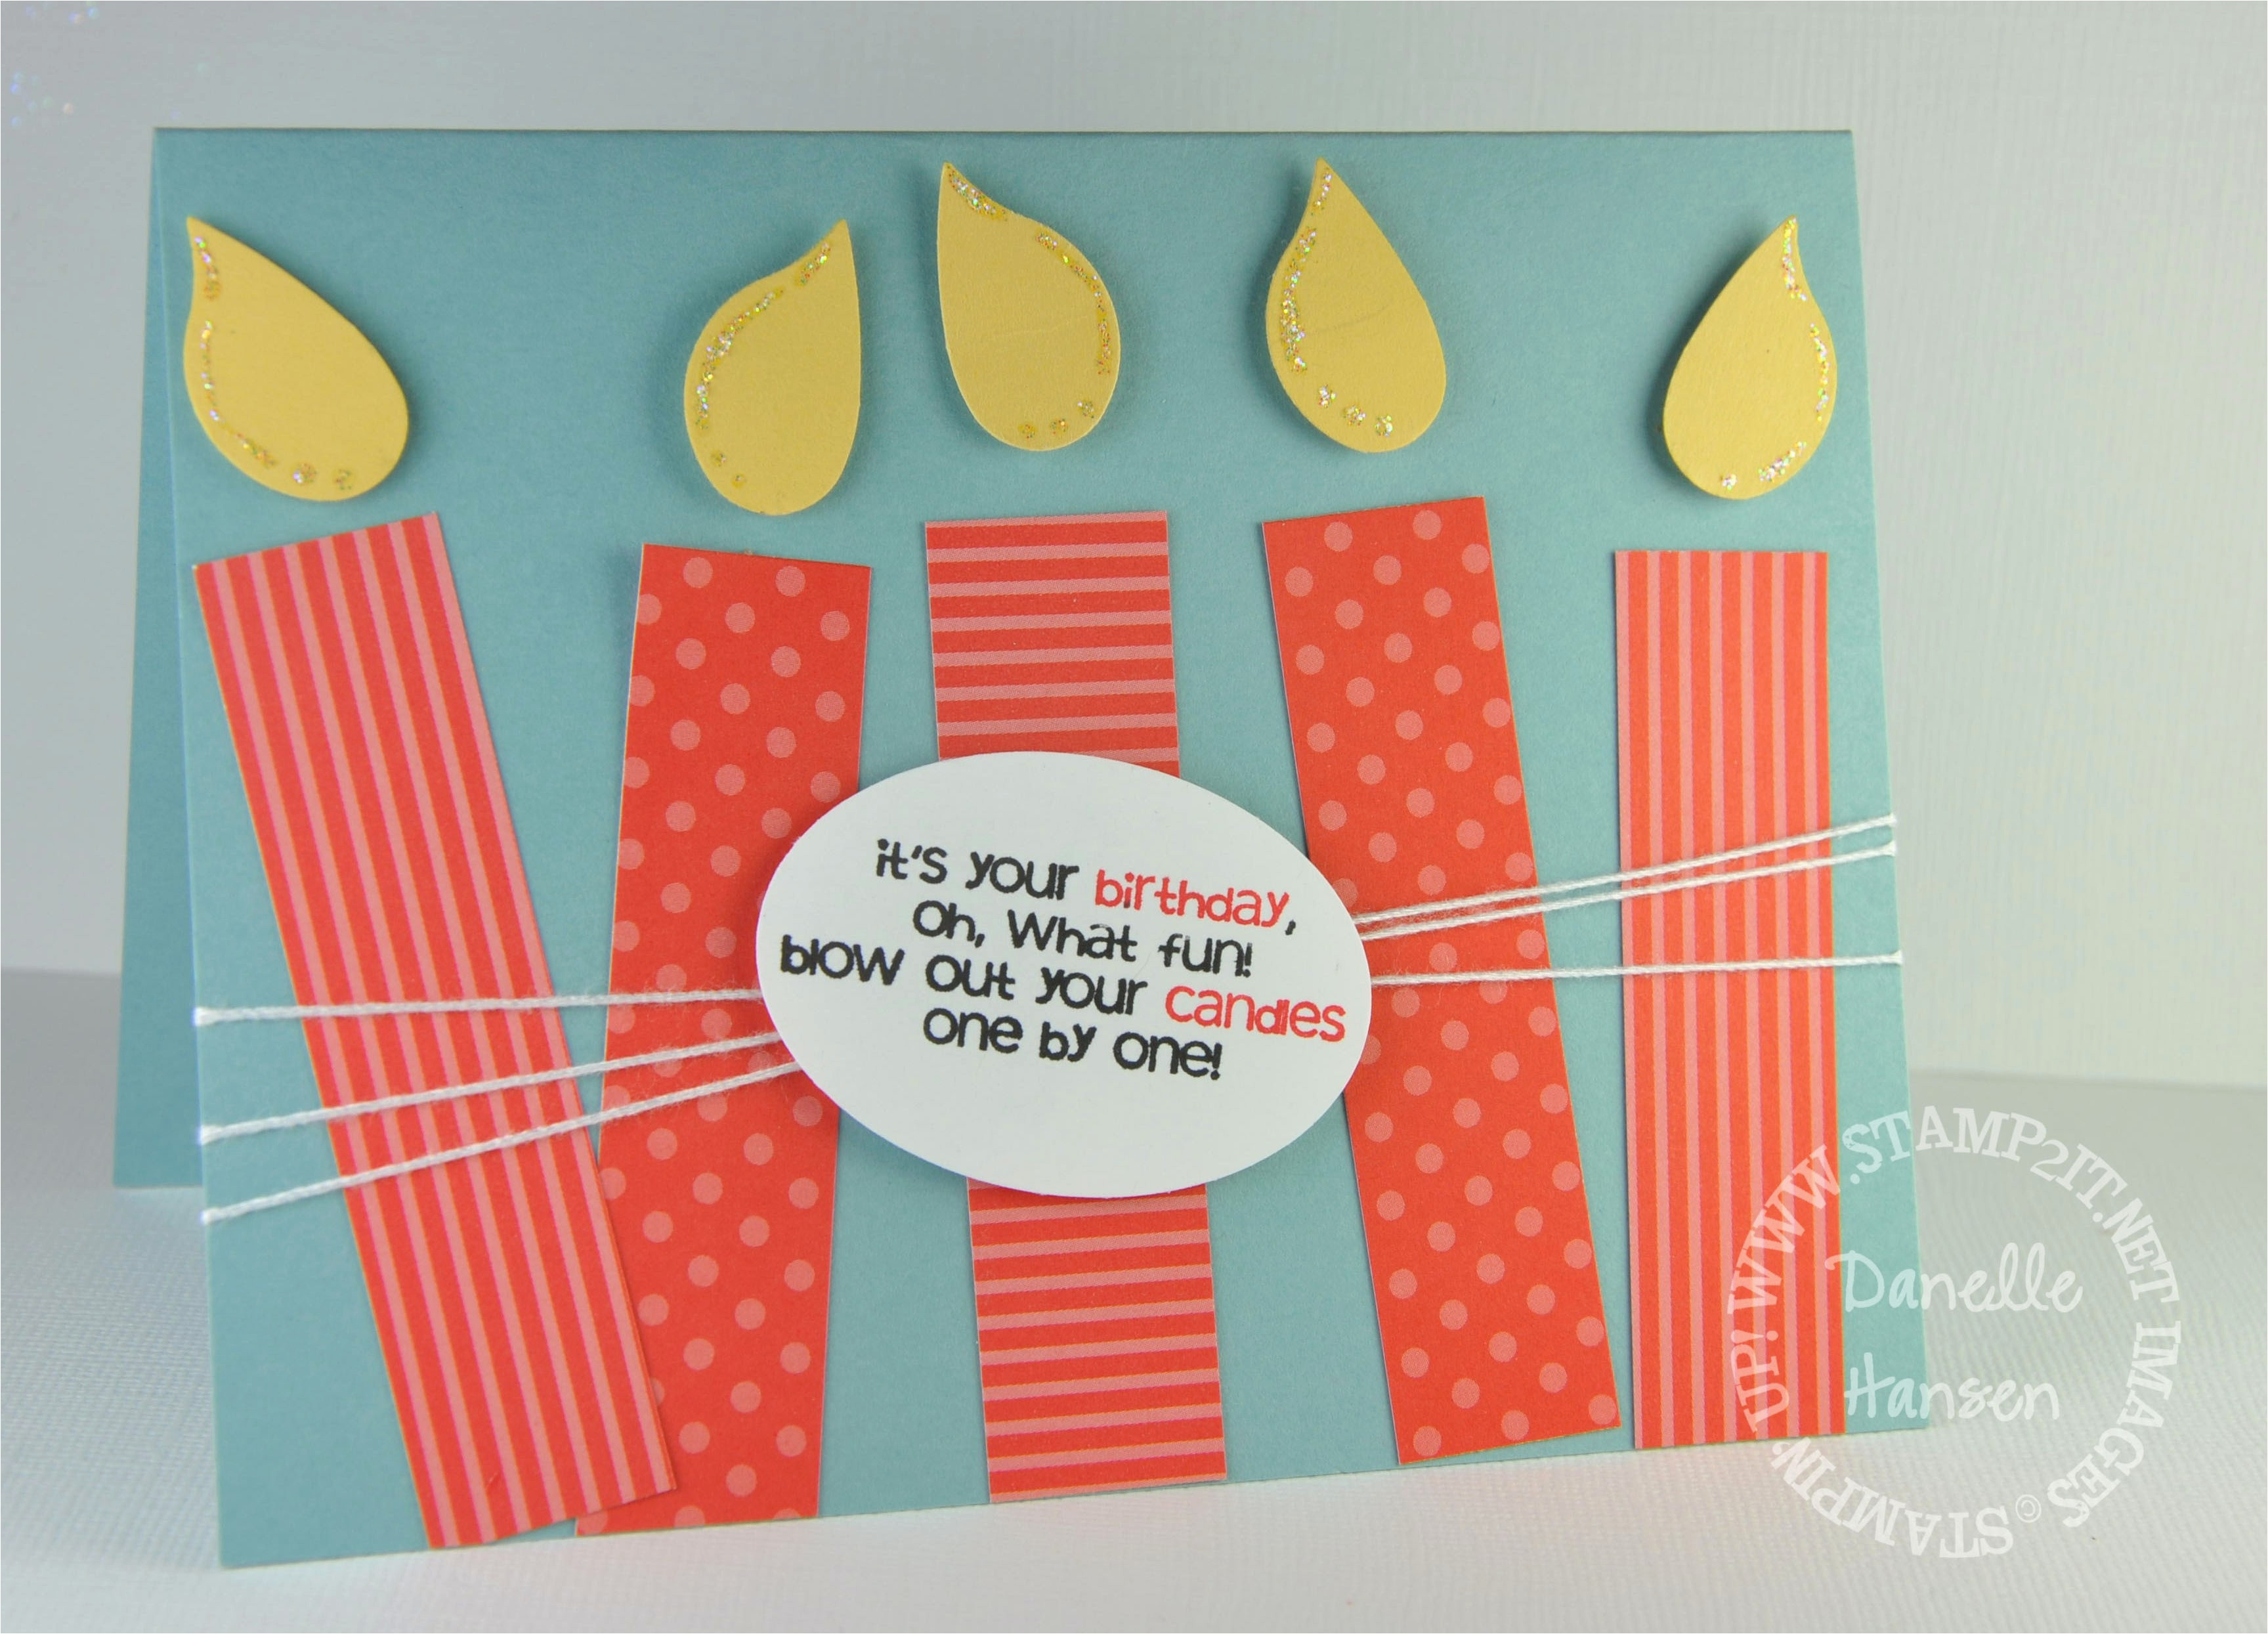 Good Ideas For Homemade Birthday Cards Diy Birthday Cards For Husband Creative Handmade Birthday Card Ideas